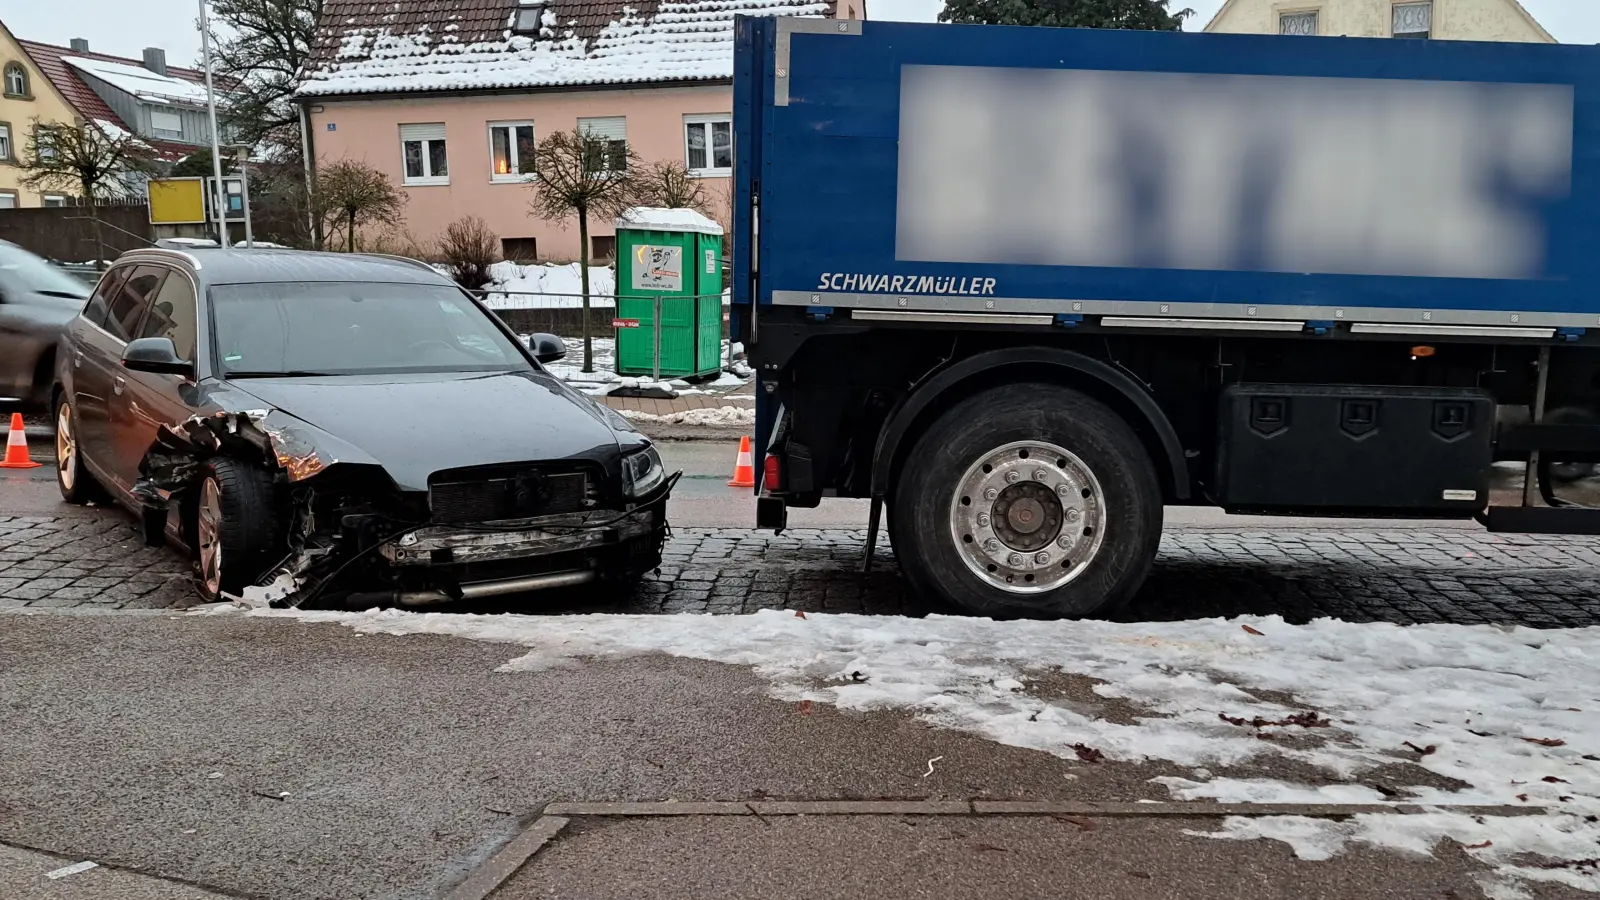 Der Pkw war nicht mehr fahrbereit. Nach den Angaben der Polizei musste dieser abgeschleppt werden. (Foto: Florian Schwab)